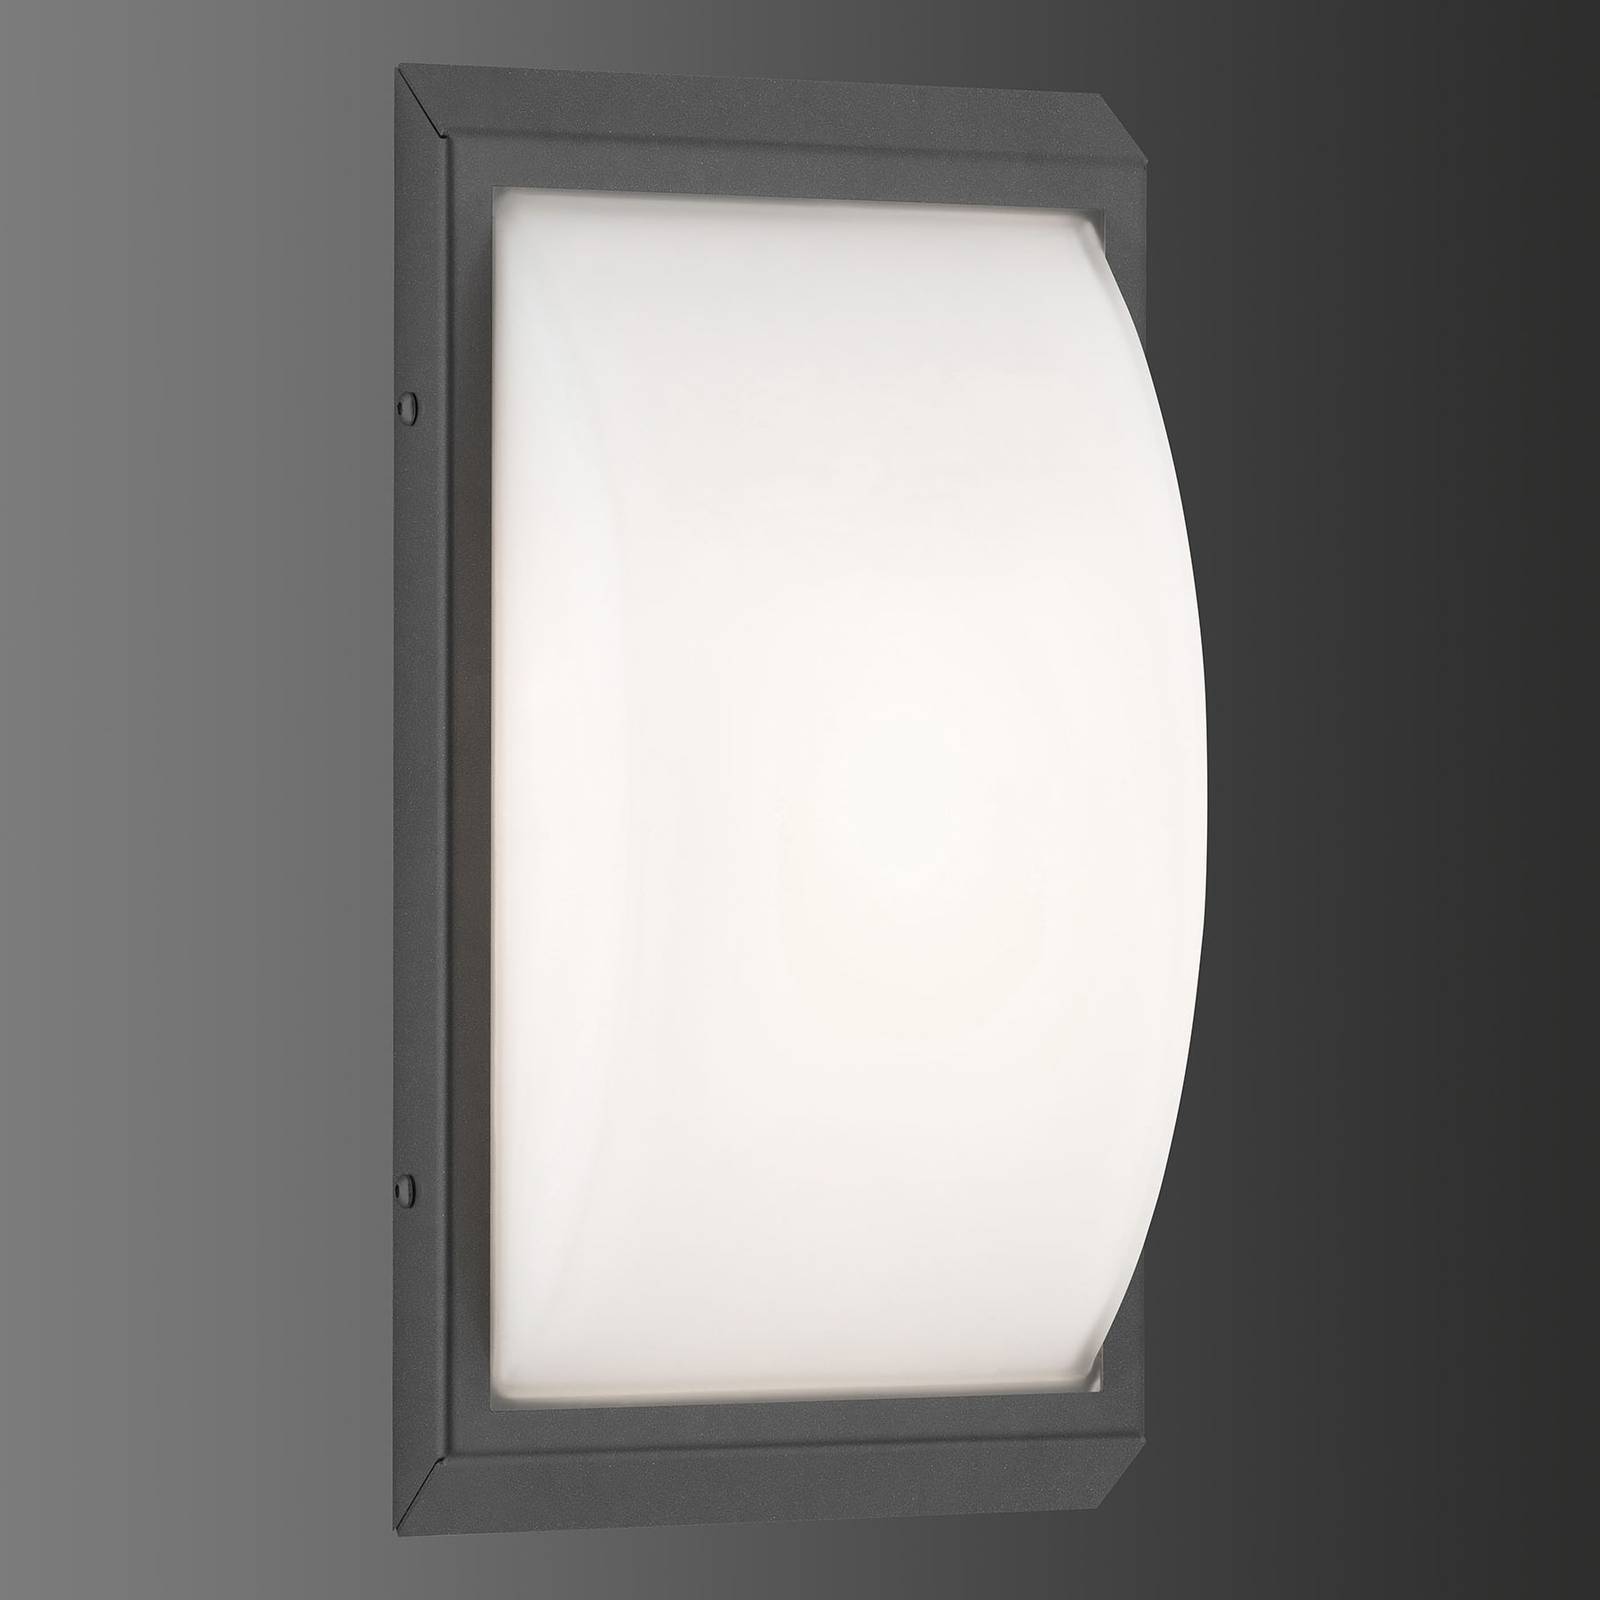 LCD Venkovní nástěnné světlo 053 hlásič pohybu grafit